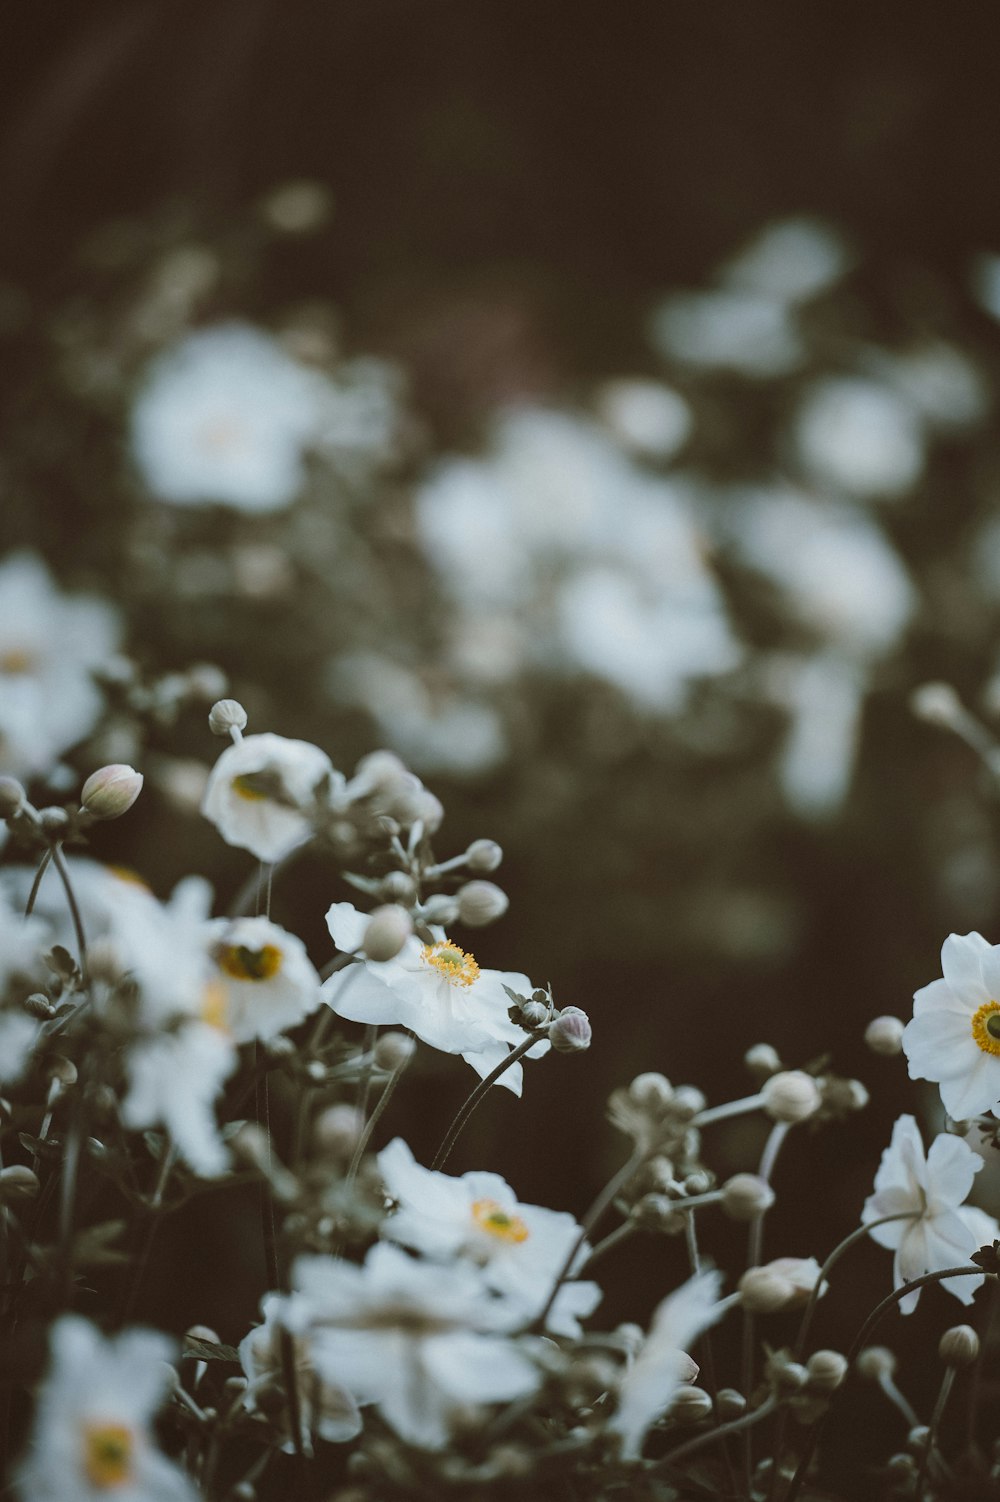 Photographie sélective de fleurs aux pétales blancs et jaunes